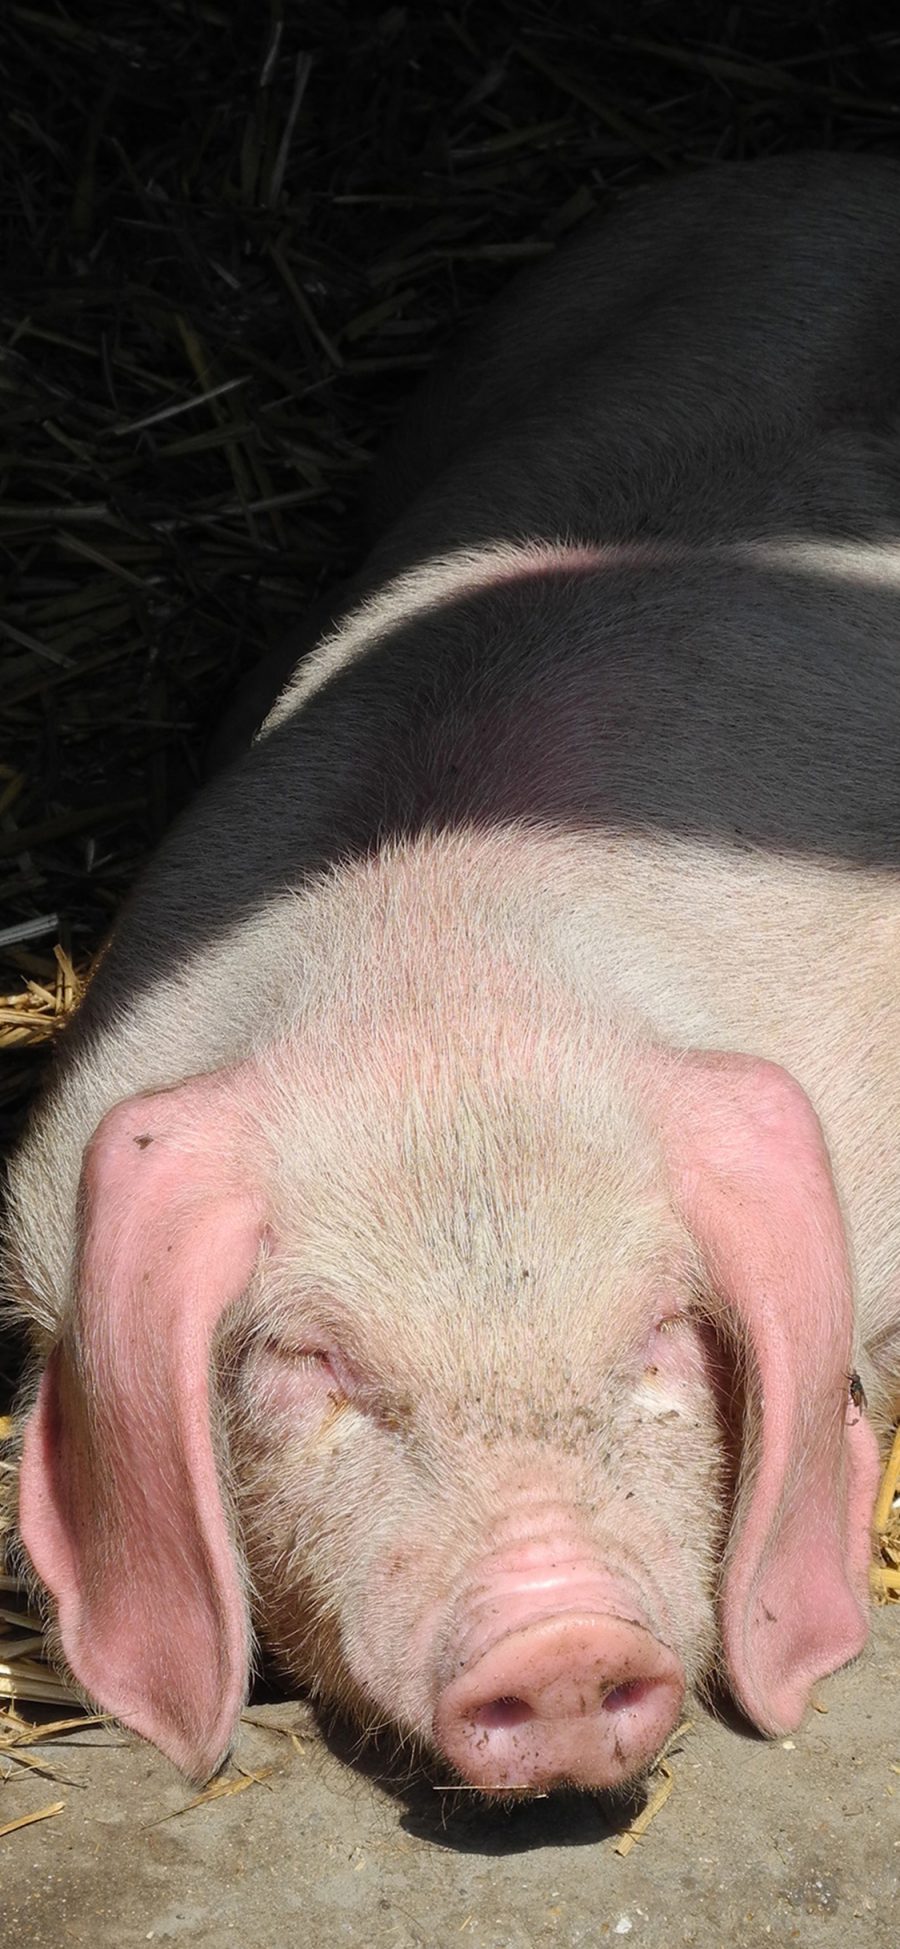 [2436×1125]家猪 慵懒  晒太阳 苹果手机壁纸图片